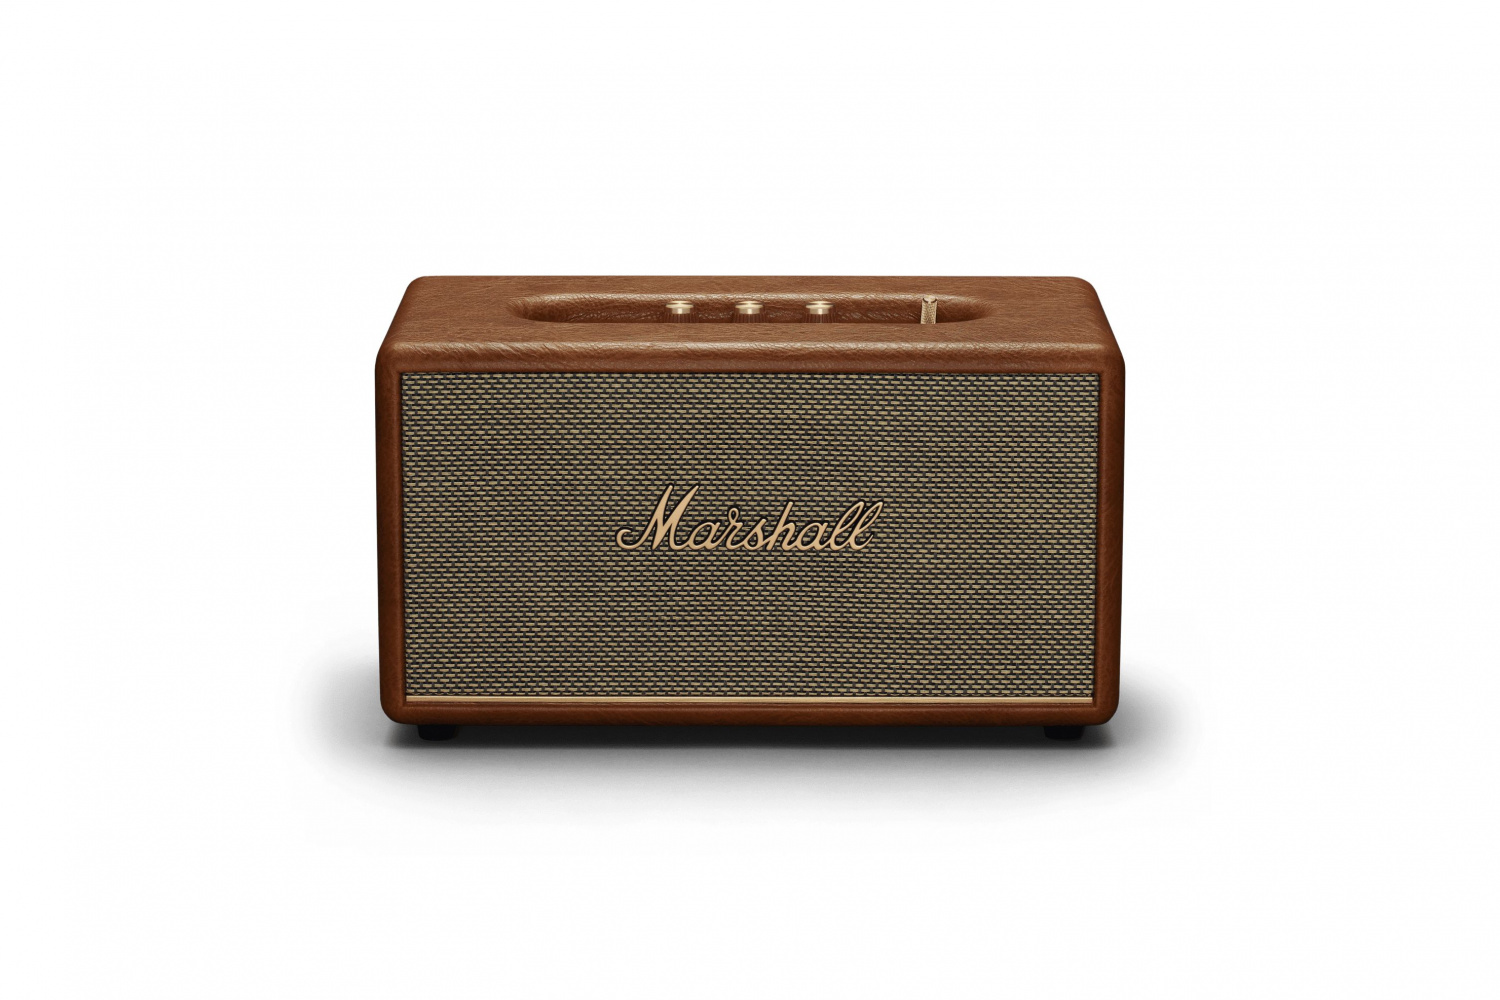 Купить акустическая система marshall stanmore 3 brown Marshall в официальном магазине Apple, Samsung, Xiaomi. iPixel.ru Купить, заказ, кредит, рассрочка, отзывы,  характеристики, цена,  фотографии, в подарок.